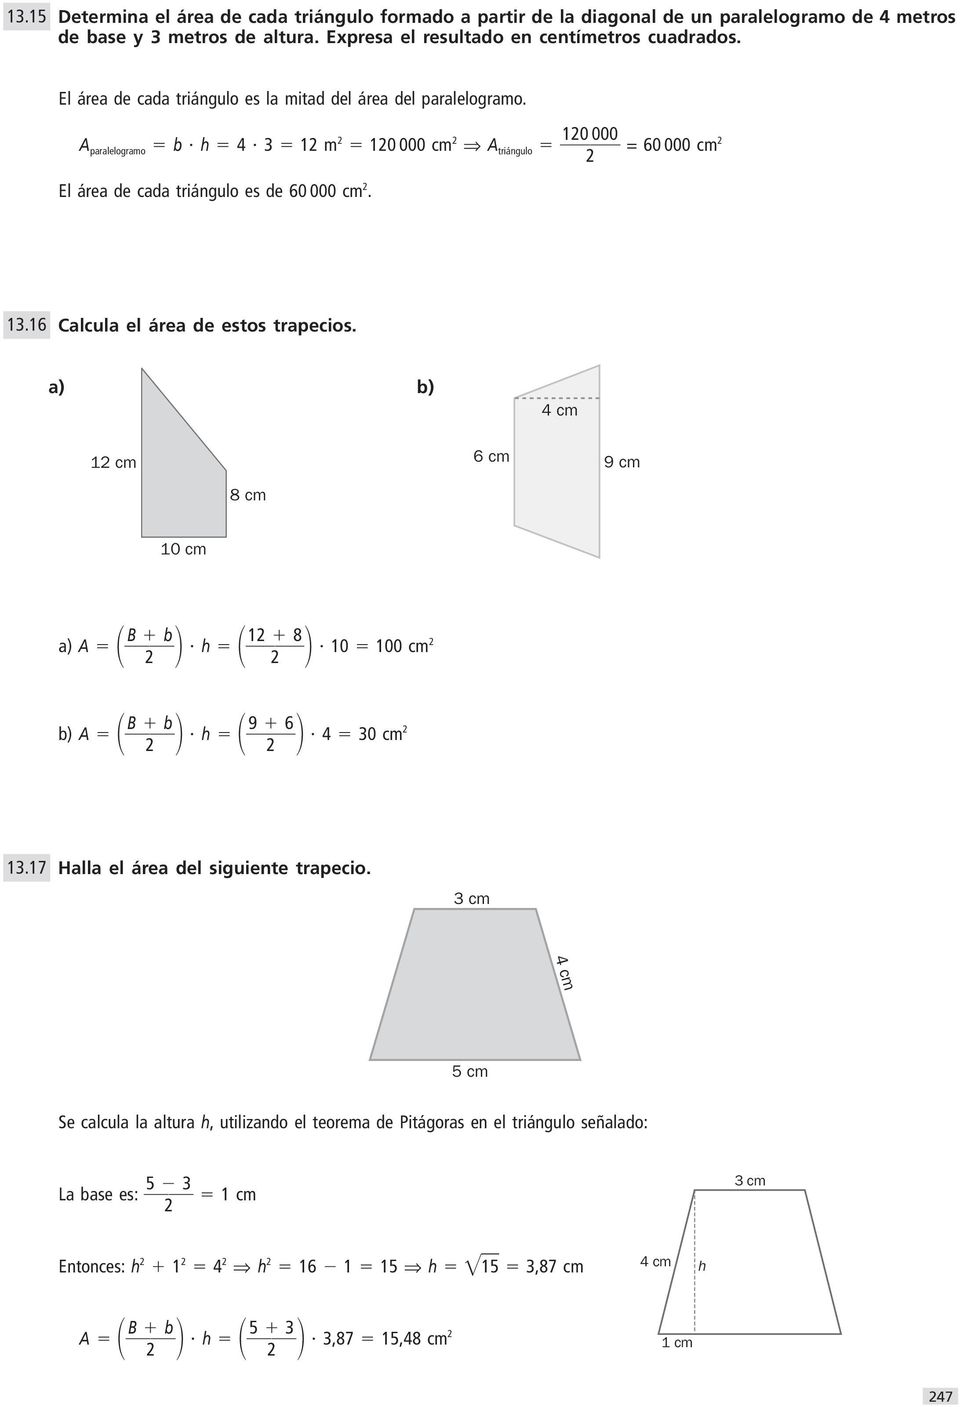 A paralelogramo b h 1 m 10 000 cm A triángulo 10 000 = 0 000 cm El área de cada triángulo es de 0 000 cm. 1.1 Calcula el área de estos trapecios.